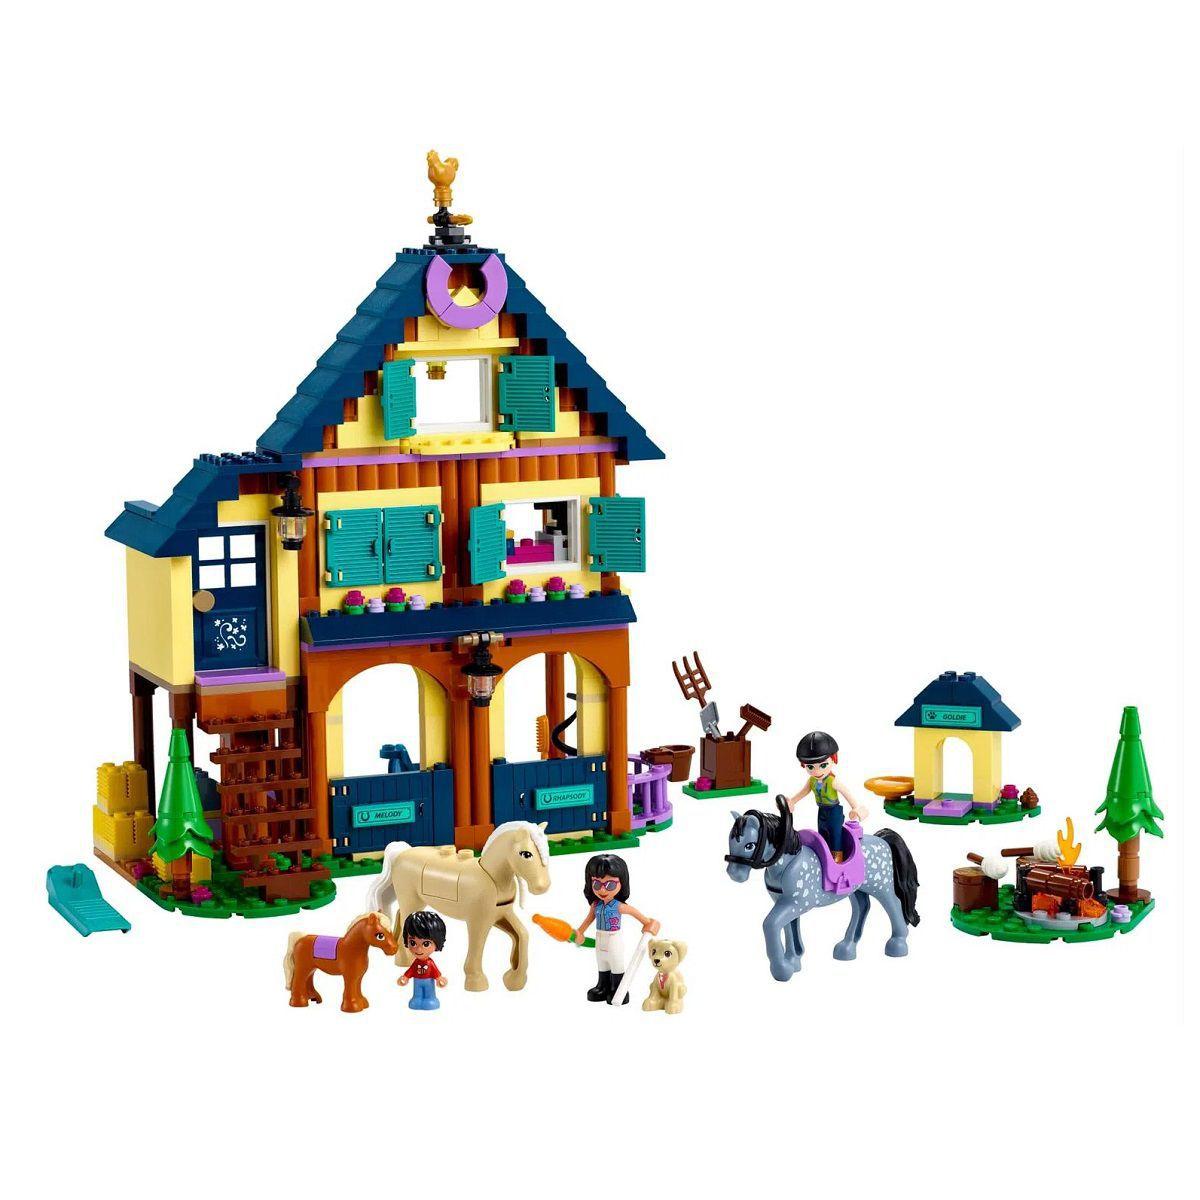 O Centro Hípico Da Floresta - Lego 1683